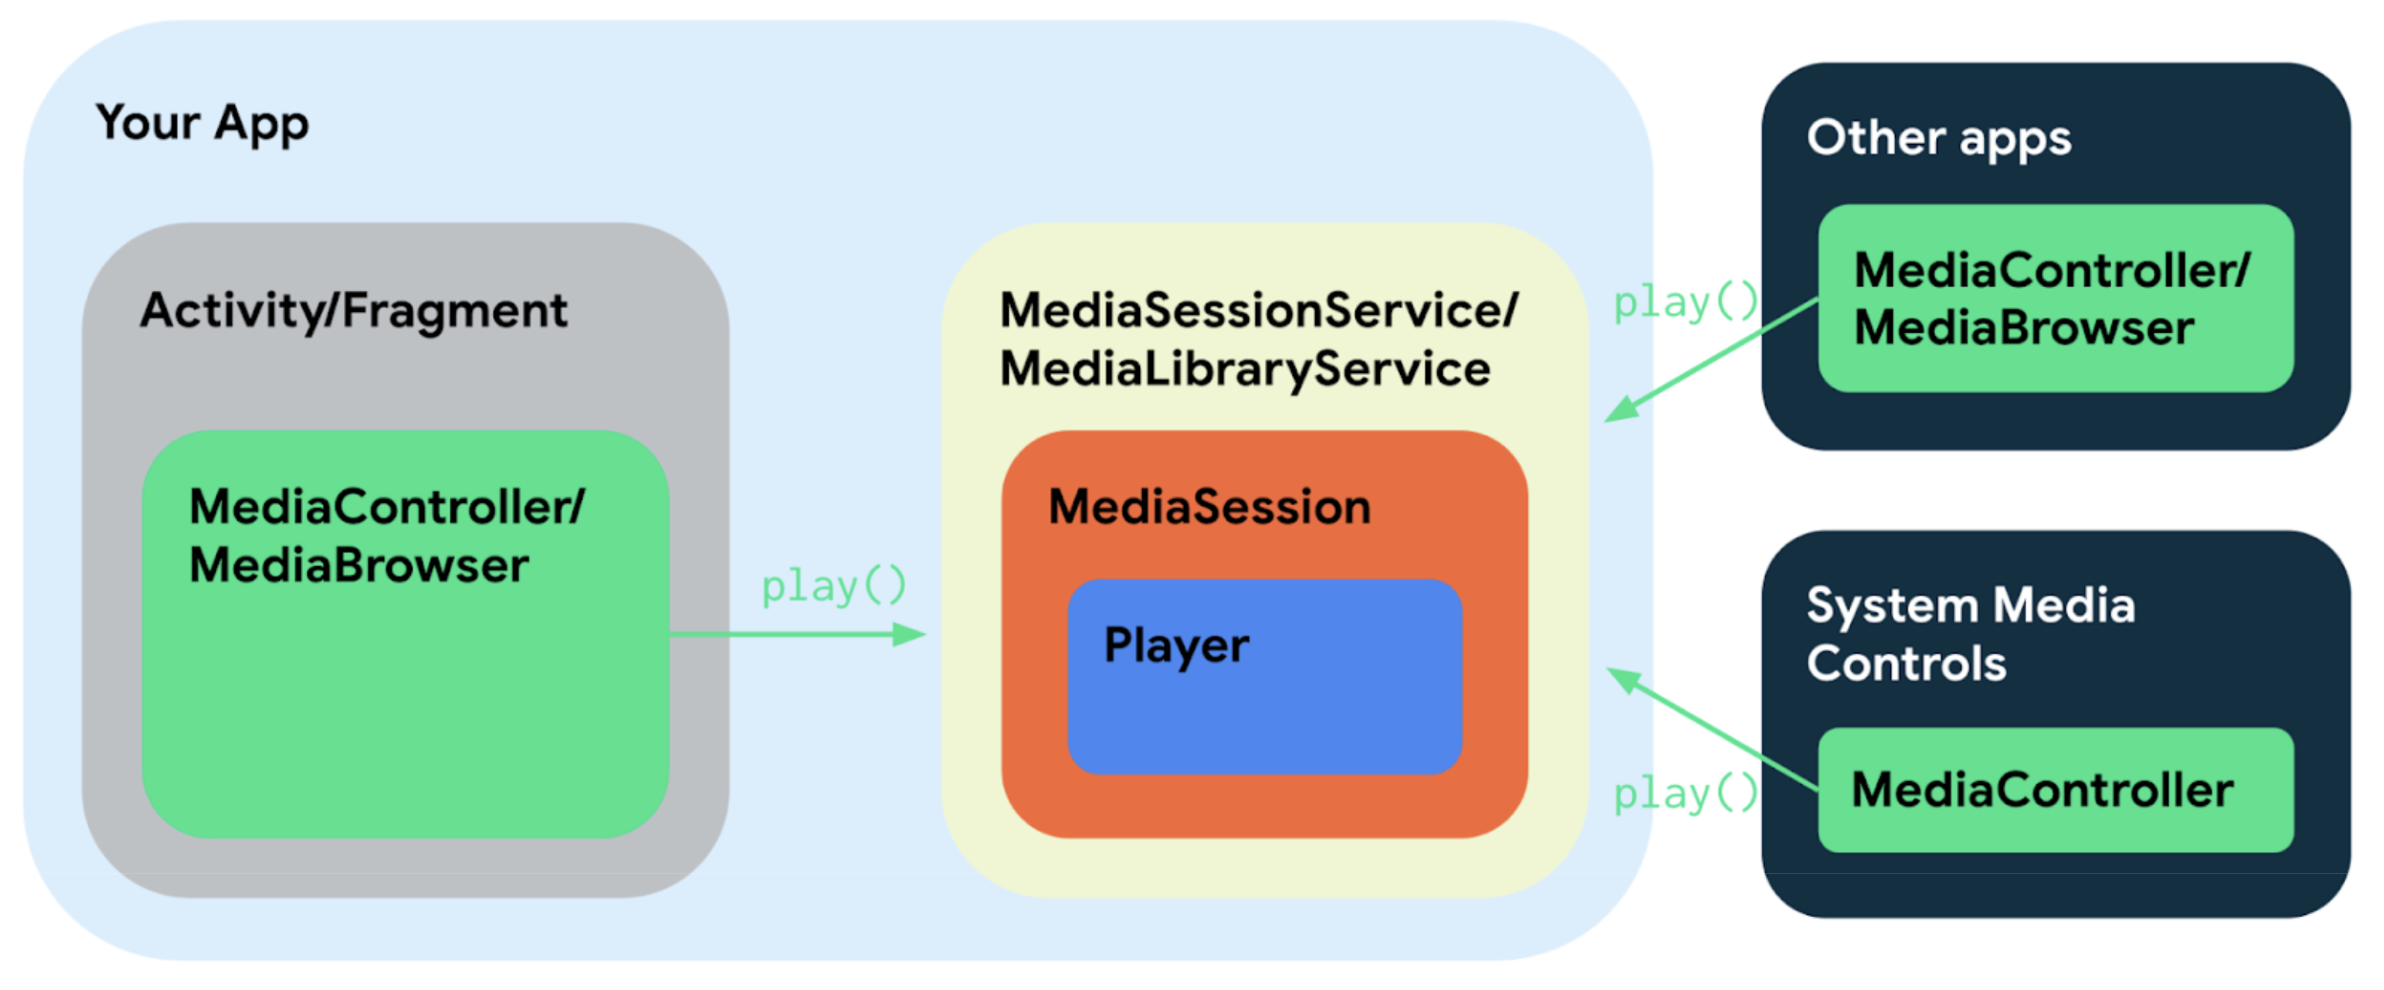 ترتبط المكونات المختلفة لتطبيق الوسائط الذي يستخدم Media3 معًا بعدة طرق بسيطة بسبب مشاركتها للواجهات والفئات.